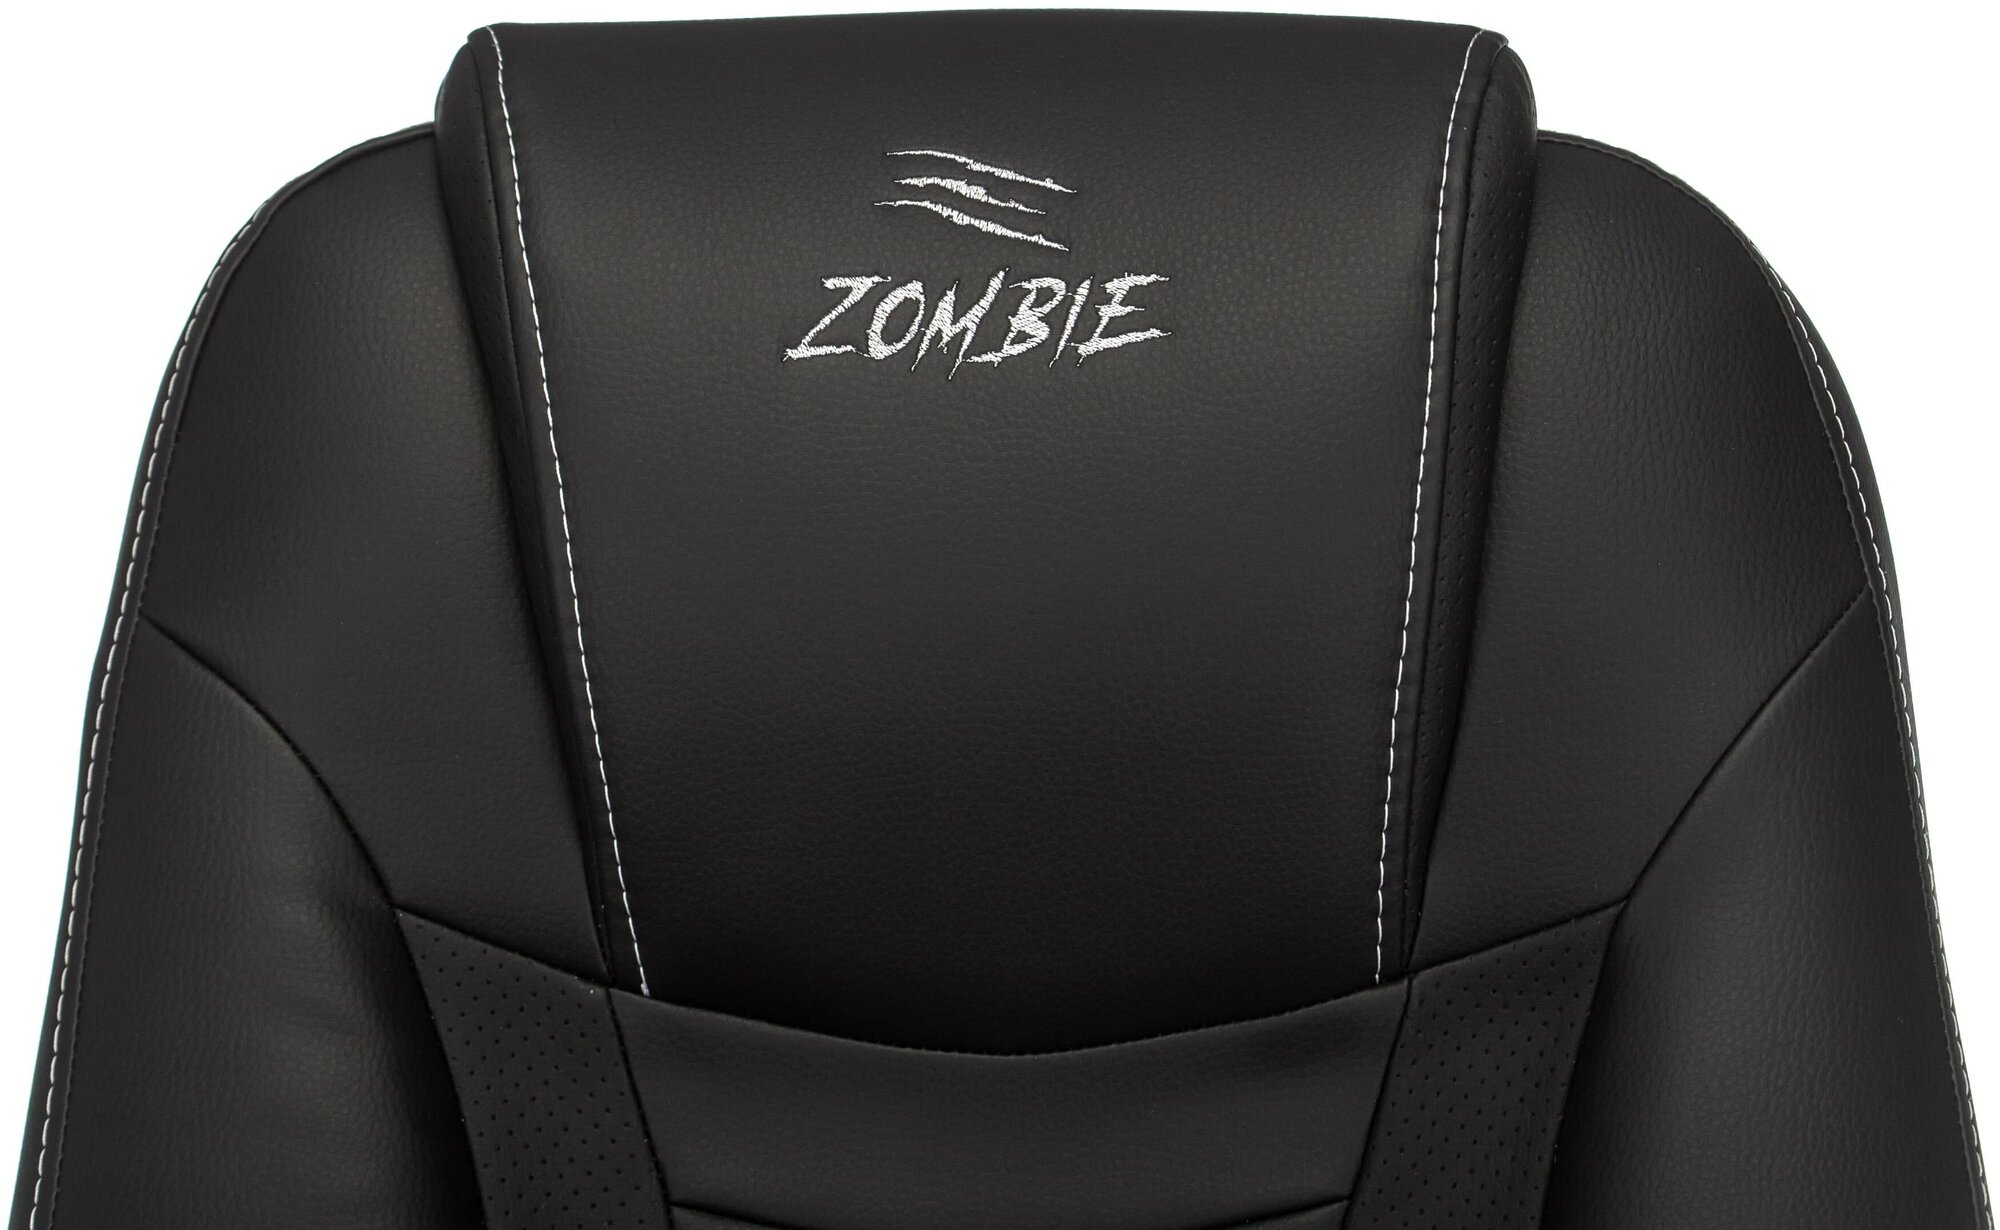 Компьютерное кресло Zombie 8 игровое